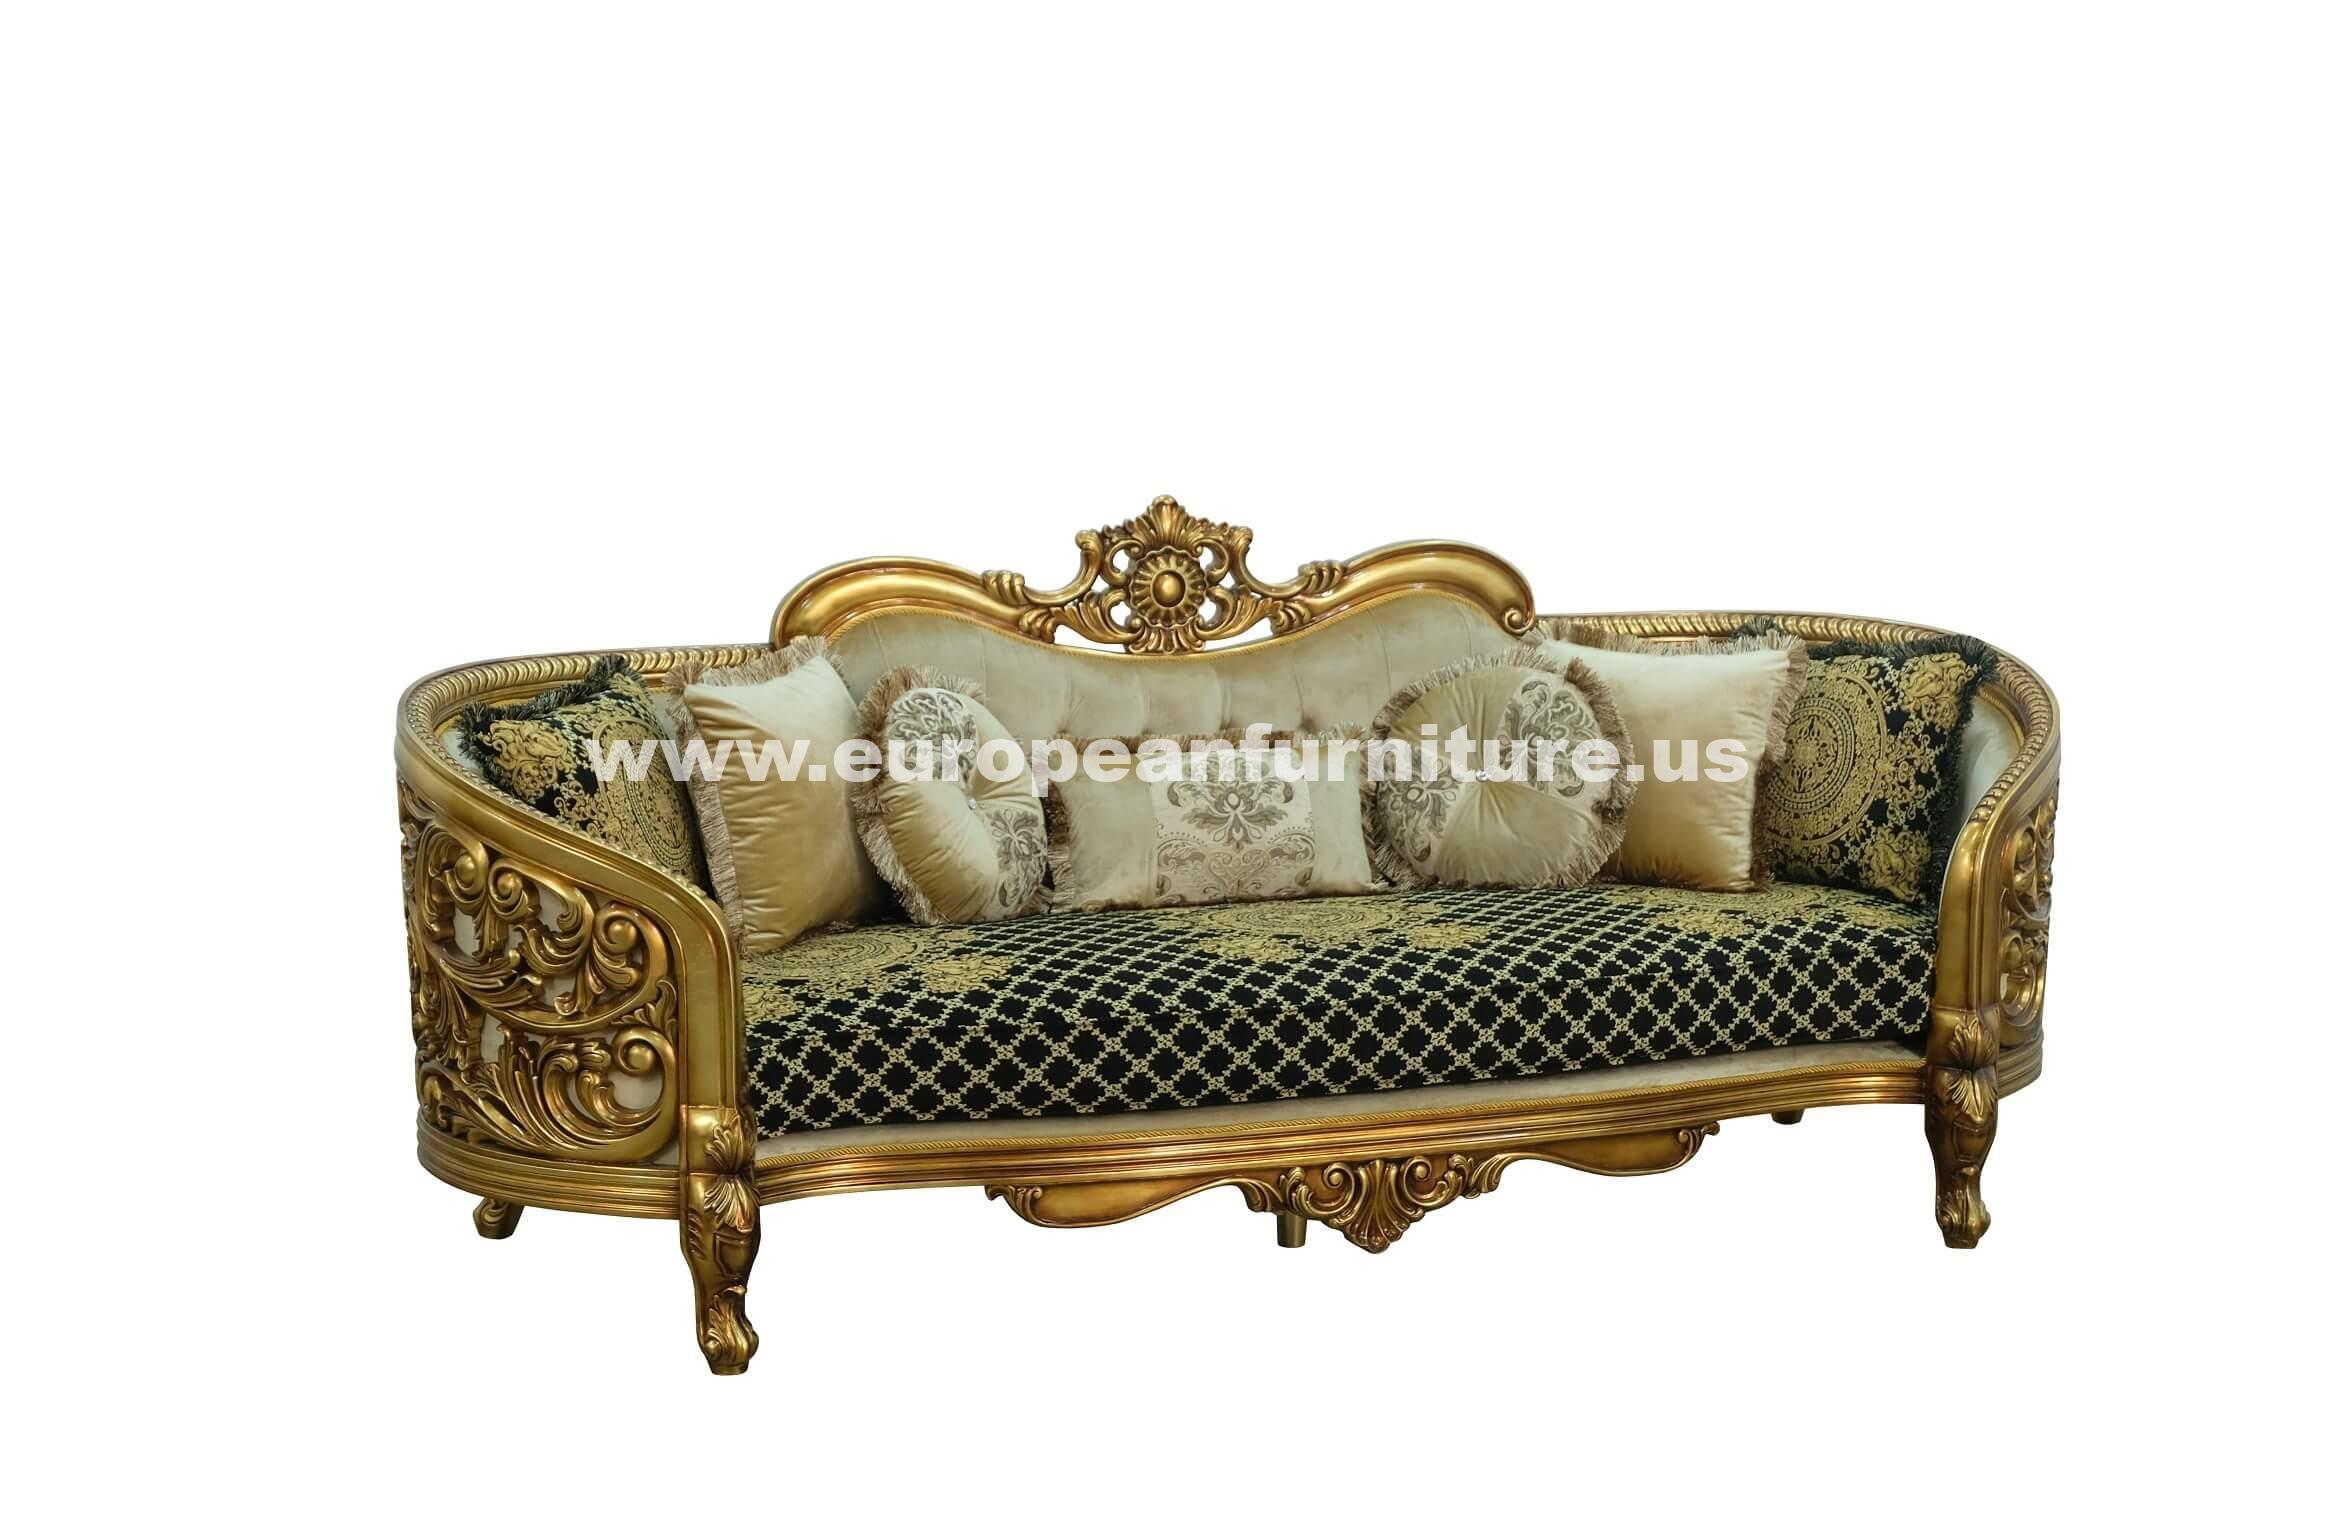 Classic, Traditional Sofa BELLAGIO 30018-S in Antique, Bronze, Black Fabric